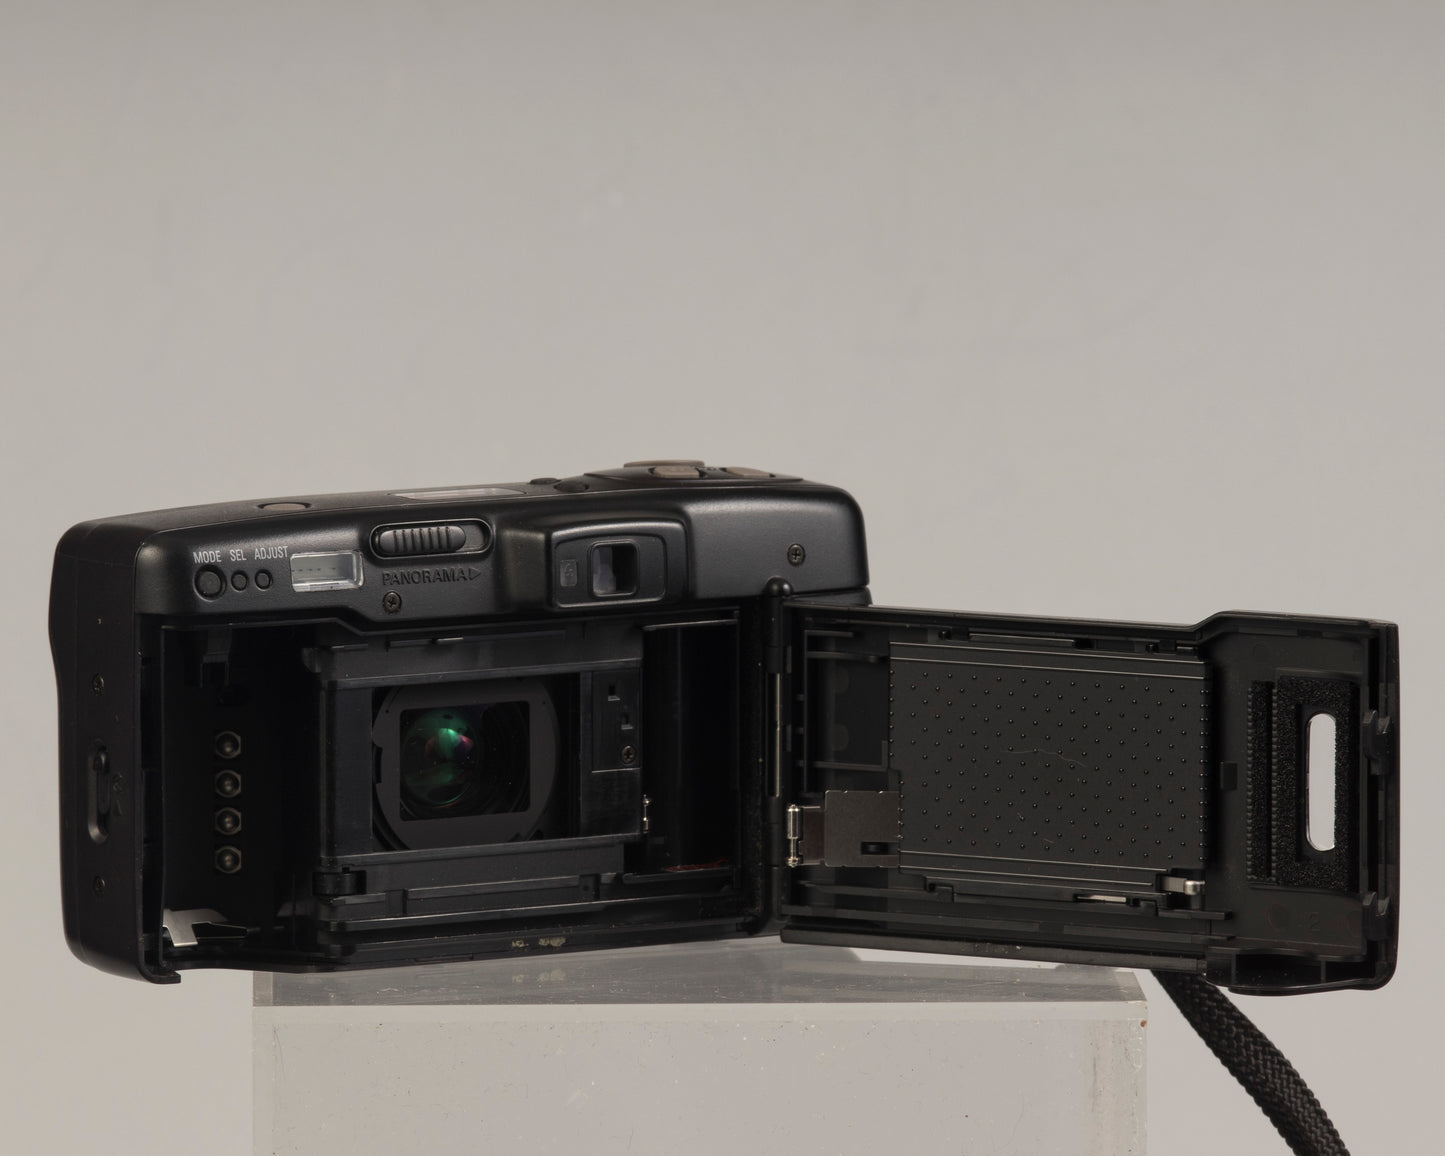 Nikon Zoom 500AF 35mm camera with case